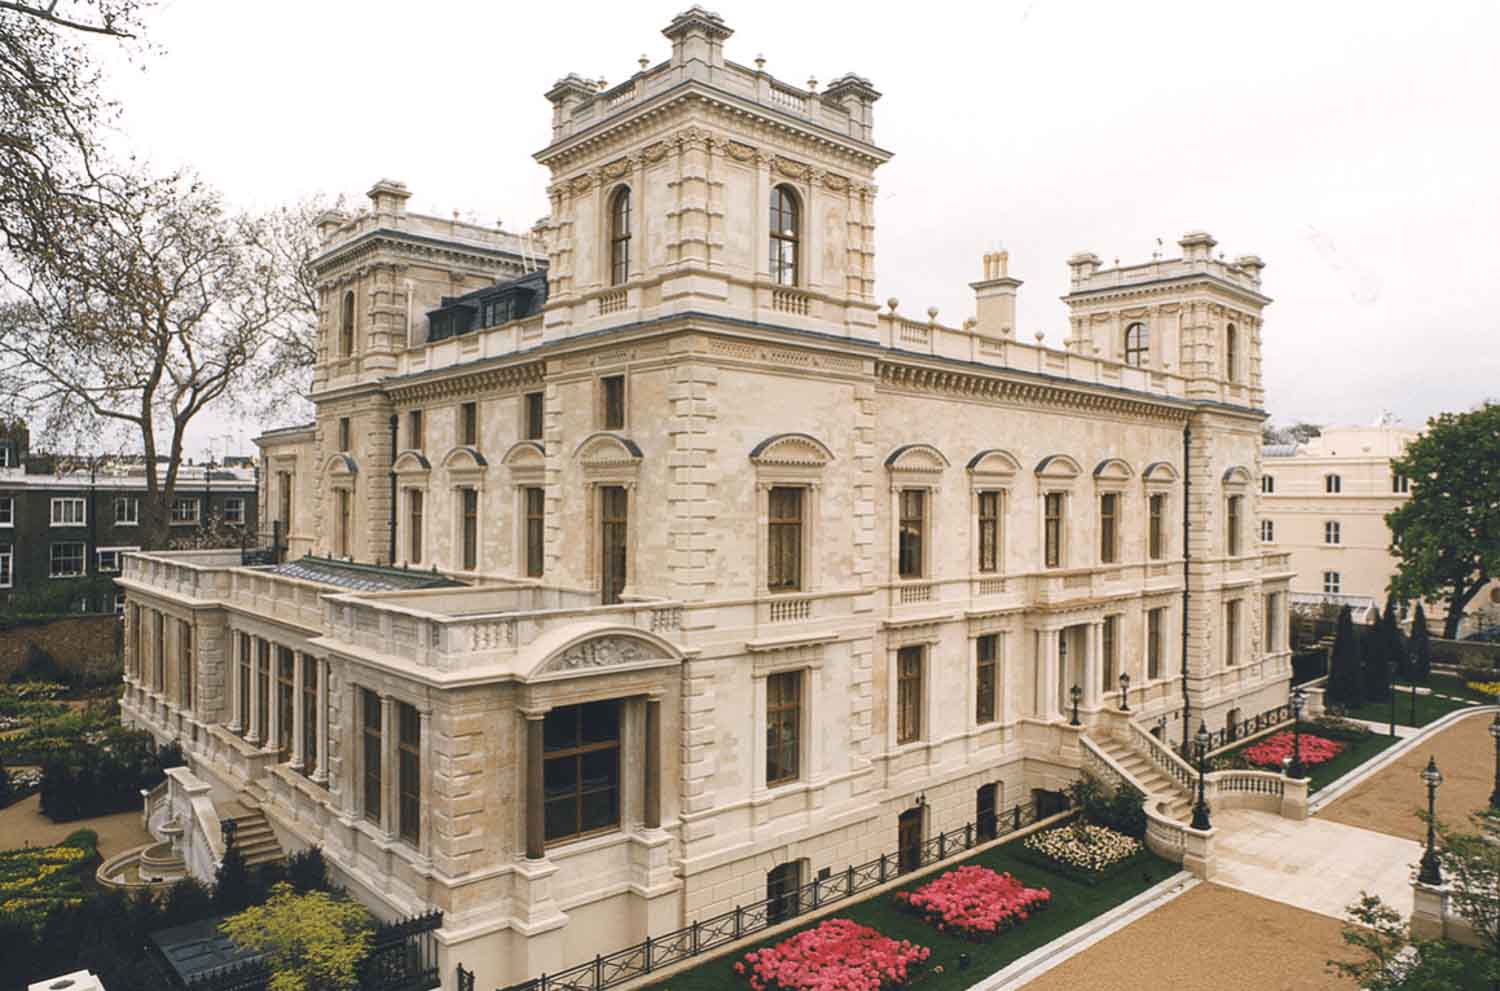 Kensington Palace Gardens xây dựng theo phong cách Thổ Nhĩ Kỳ